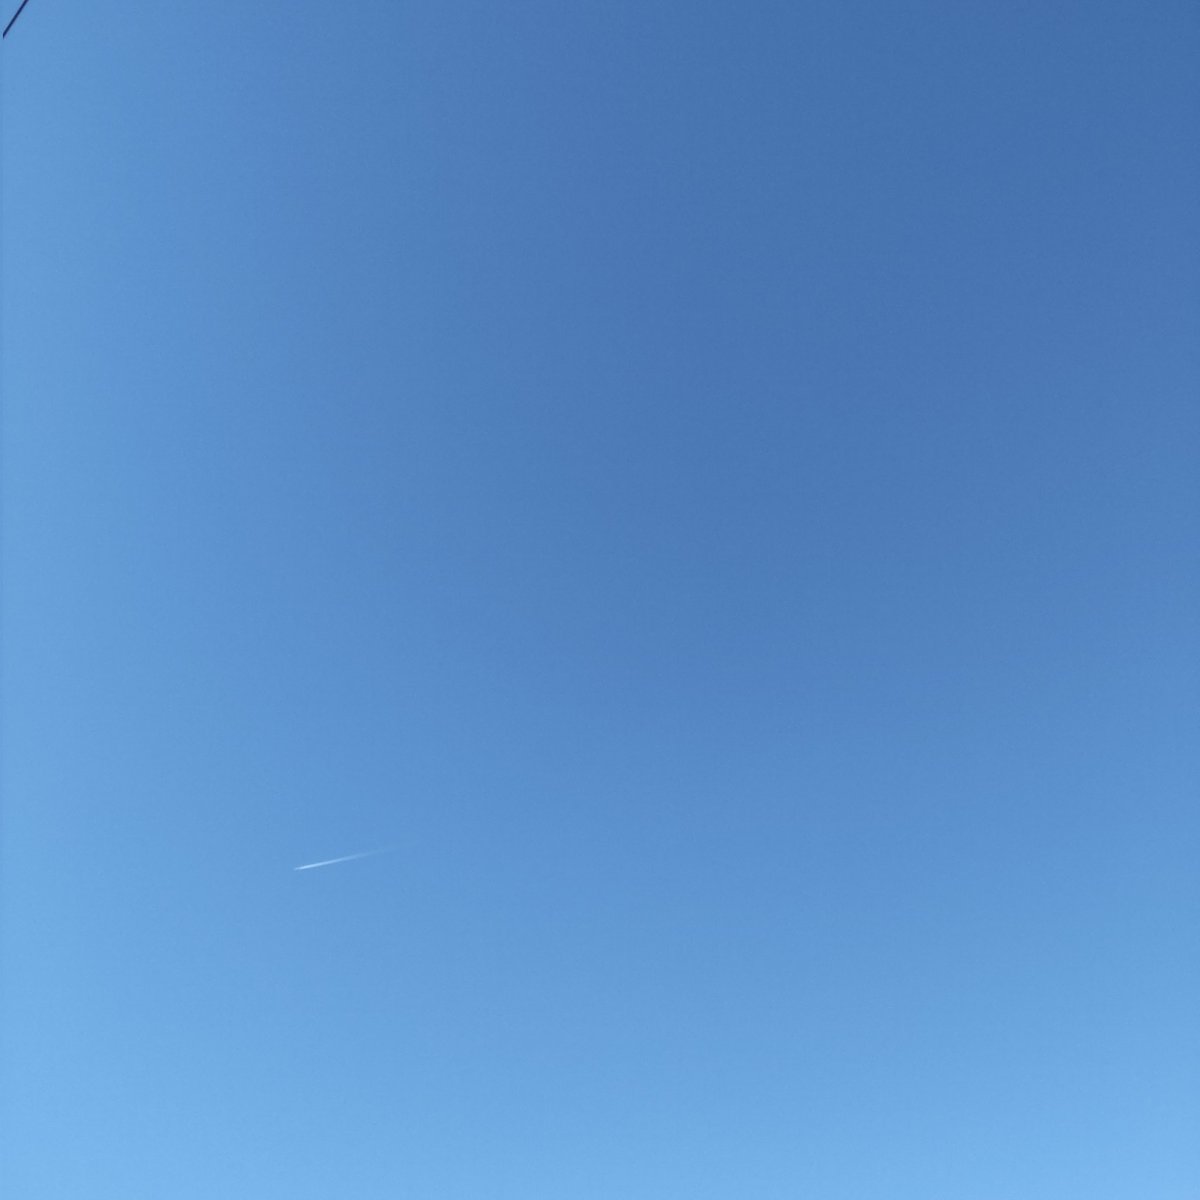 空がキレイ✨でひこうき雲✈️☁も
空のみの写真を撮ったつもりが電線も撮ってて残念な写真💦
でも、せっかく撮ったので📸